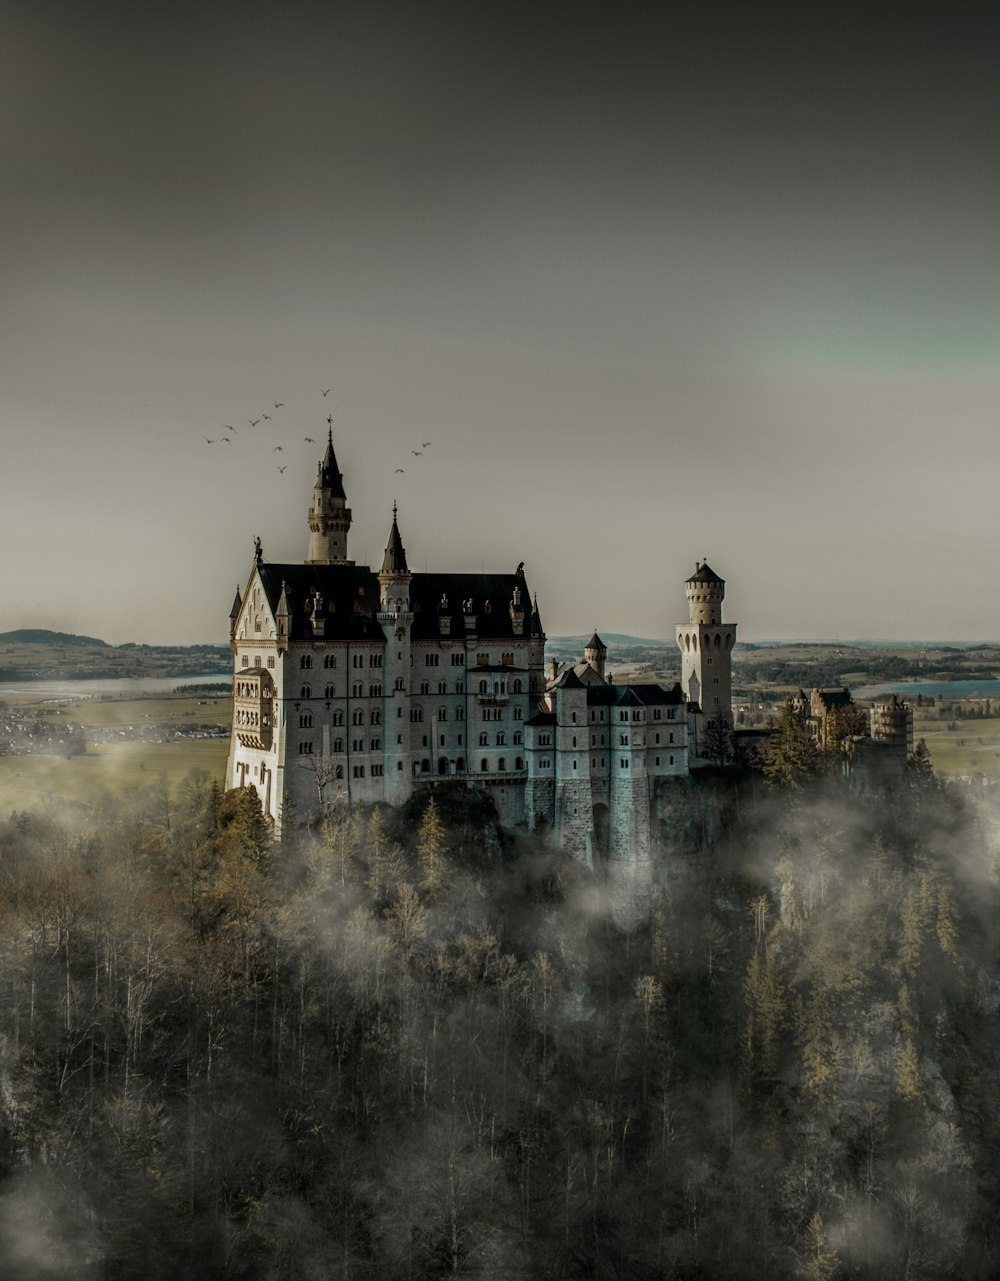 Fotografia in scala di grigi del castello bianco durante il giorno